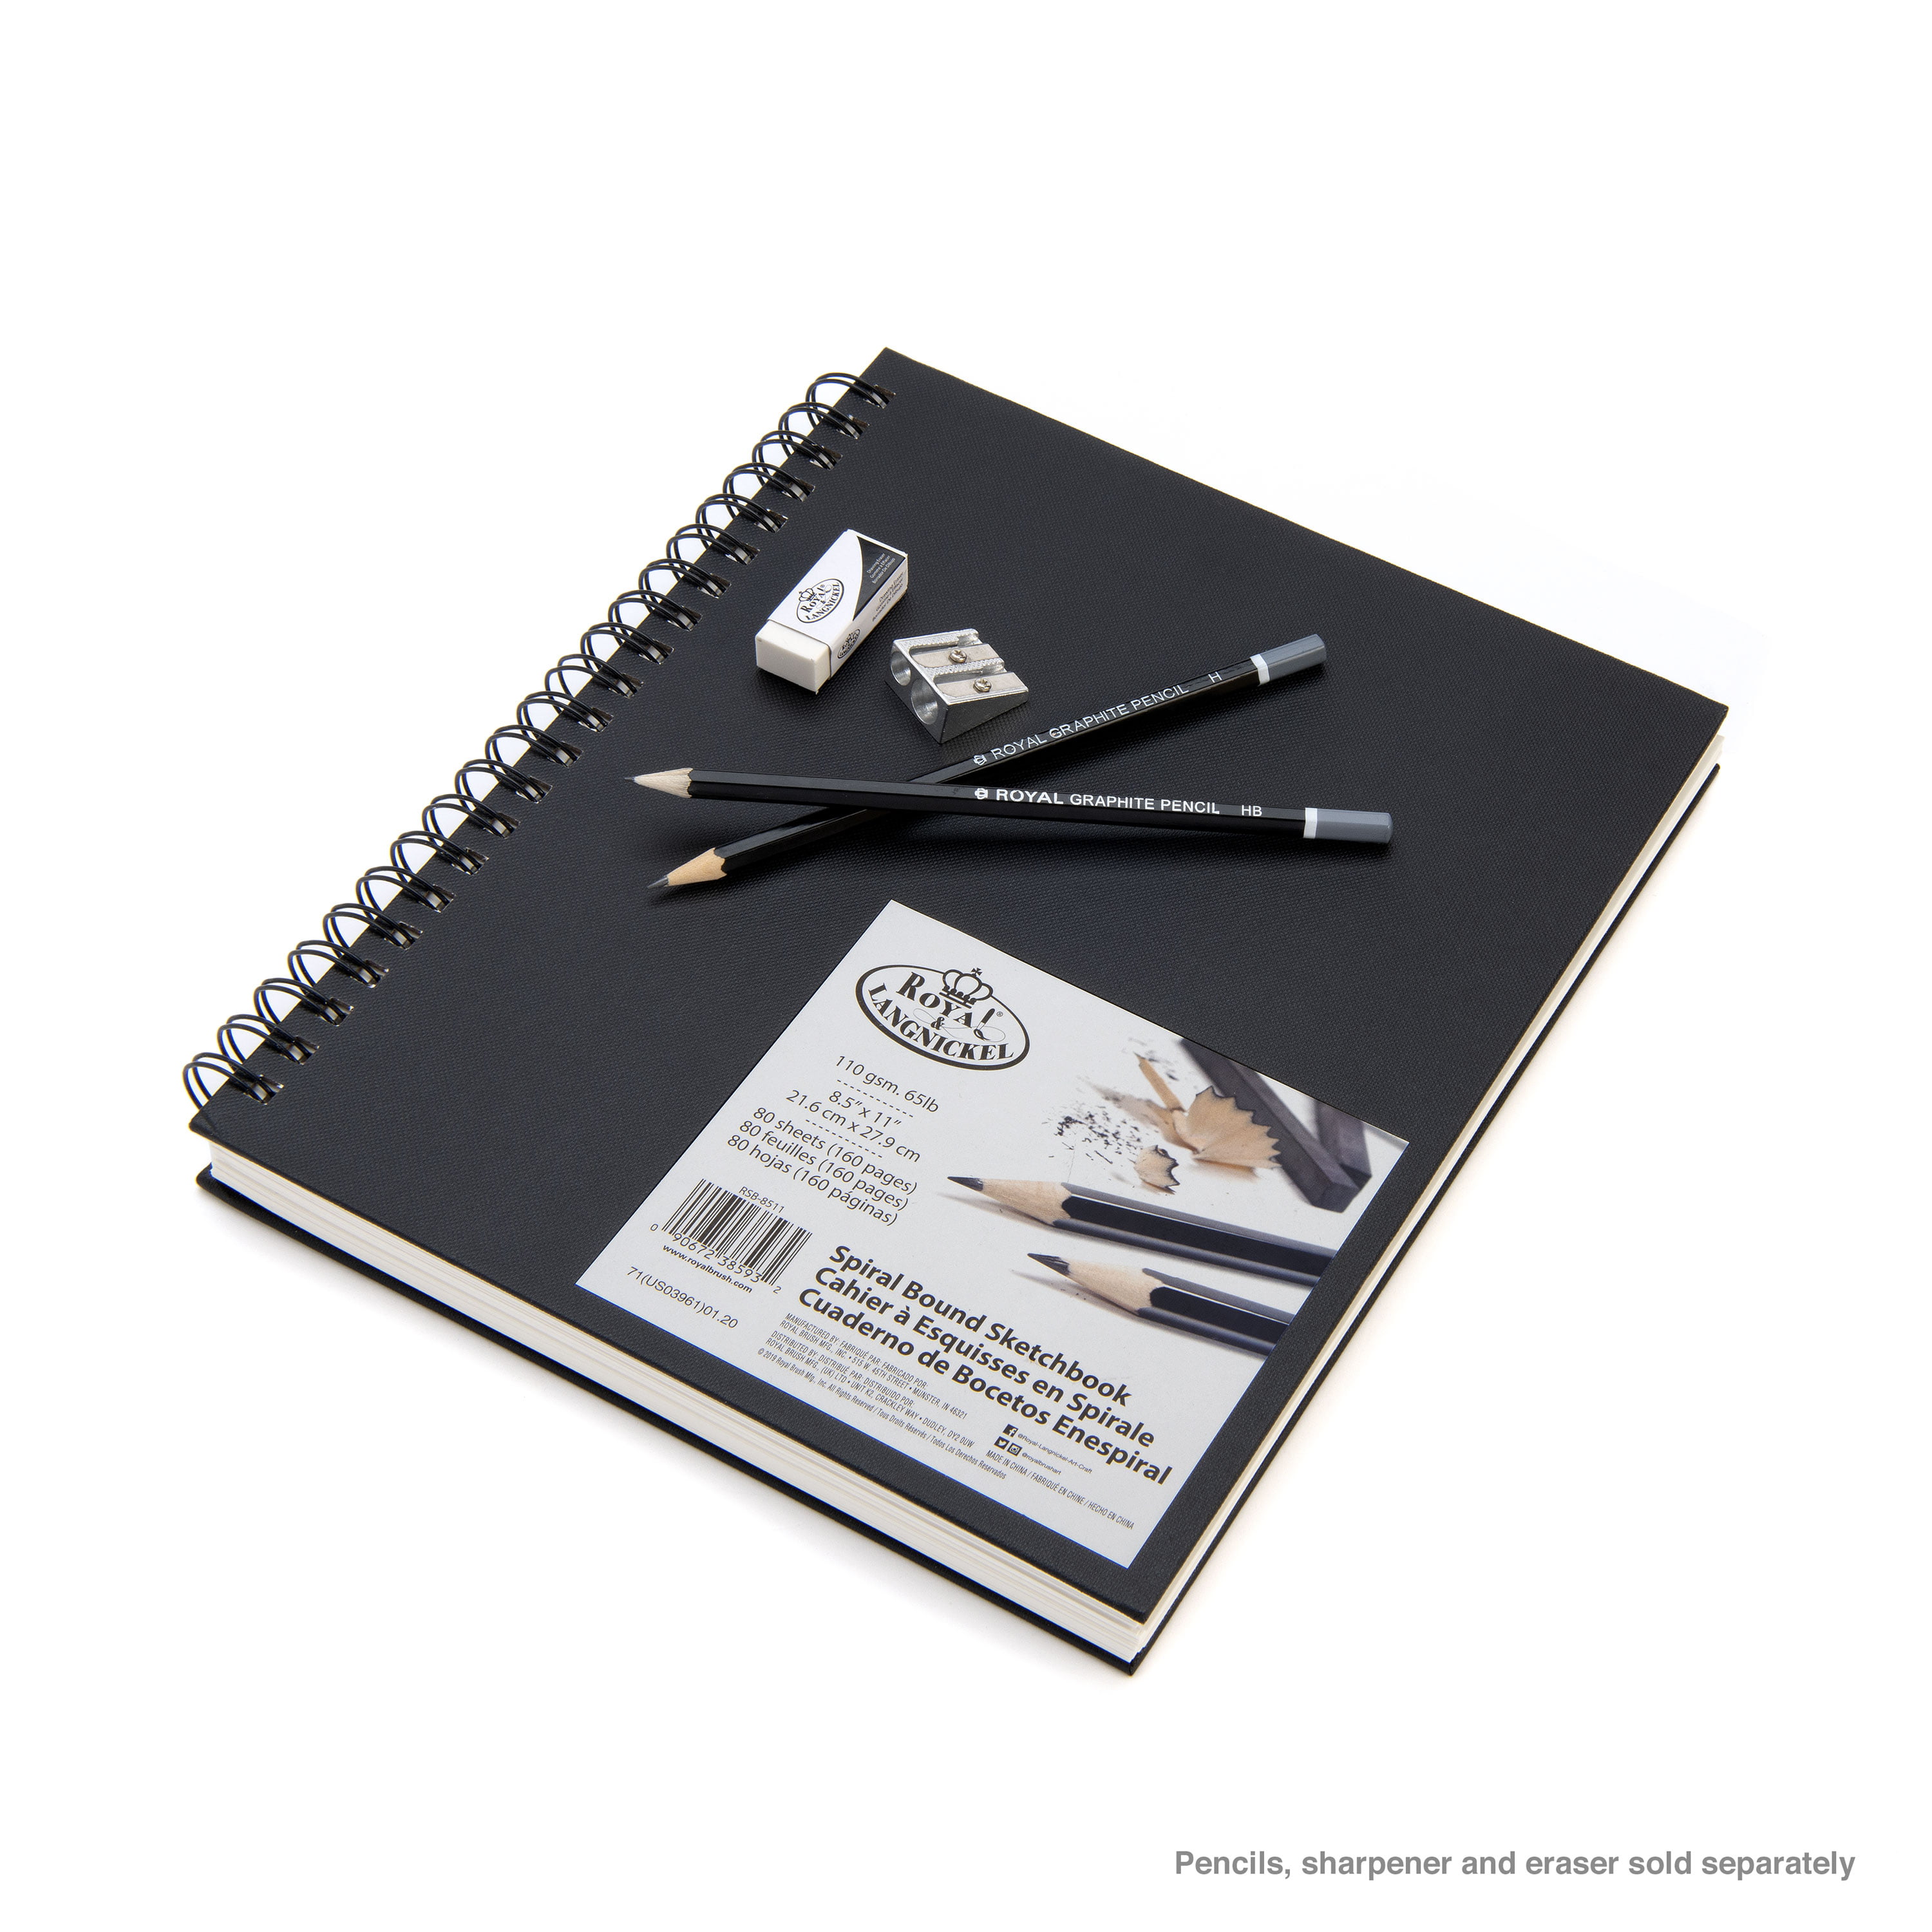 MAGICLULU 16k Sketchbook Sketch Book for Adults Spiral-Bound Sketchbook  Drawing Sketch Pad Large Drawing Pad Large Sketch Pad Painting Paper  Sketching